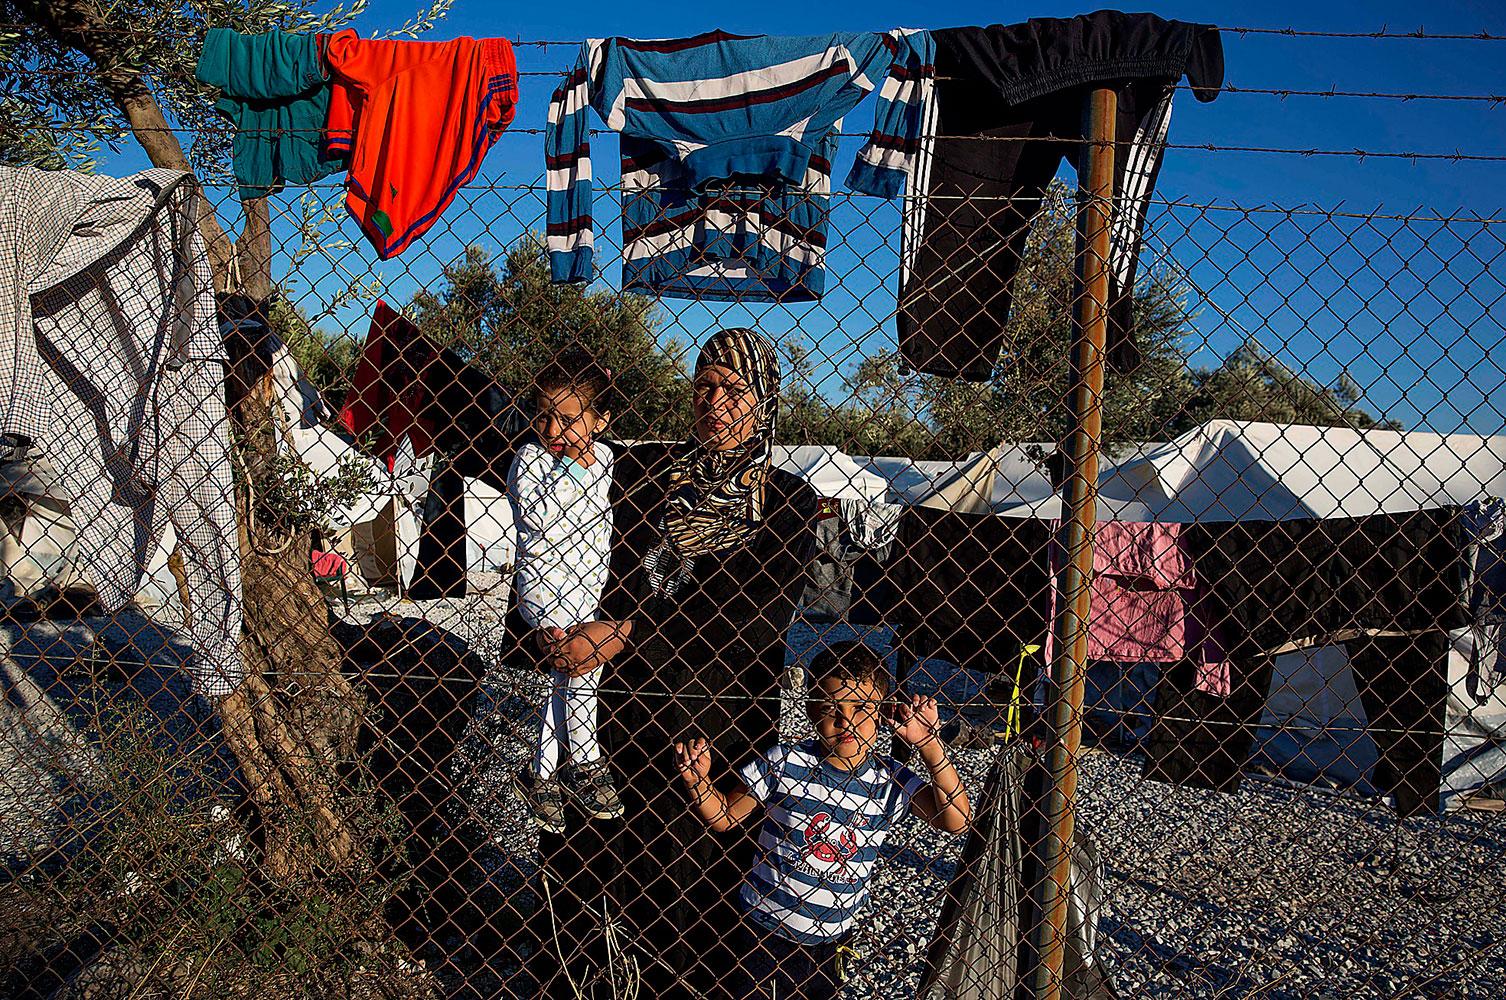 Sedan avtalet mellan EU och Turkiet trädde i kraft har både Läkare utan gränser och FN:s flyktingorgan upphört med delar av sin verksamhet på Lesbos. Det nya systemet, med fängelseliknande läger, kallas ”omänskligt”.